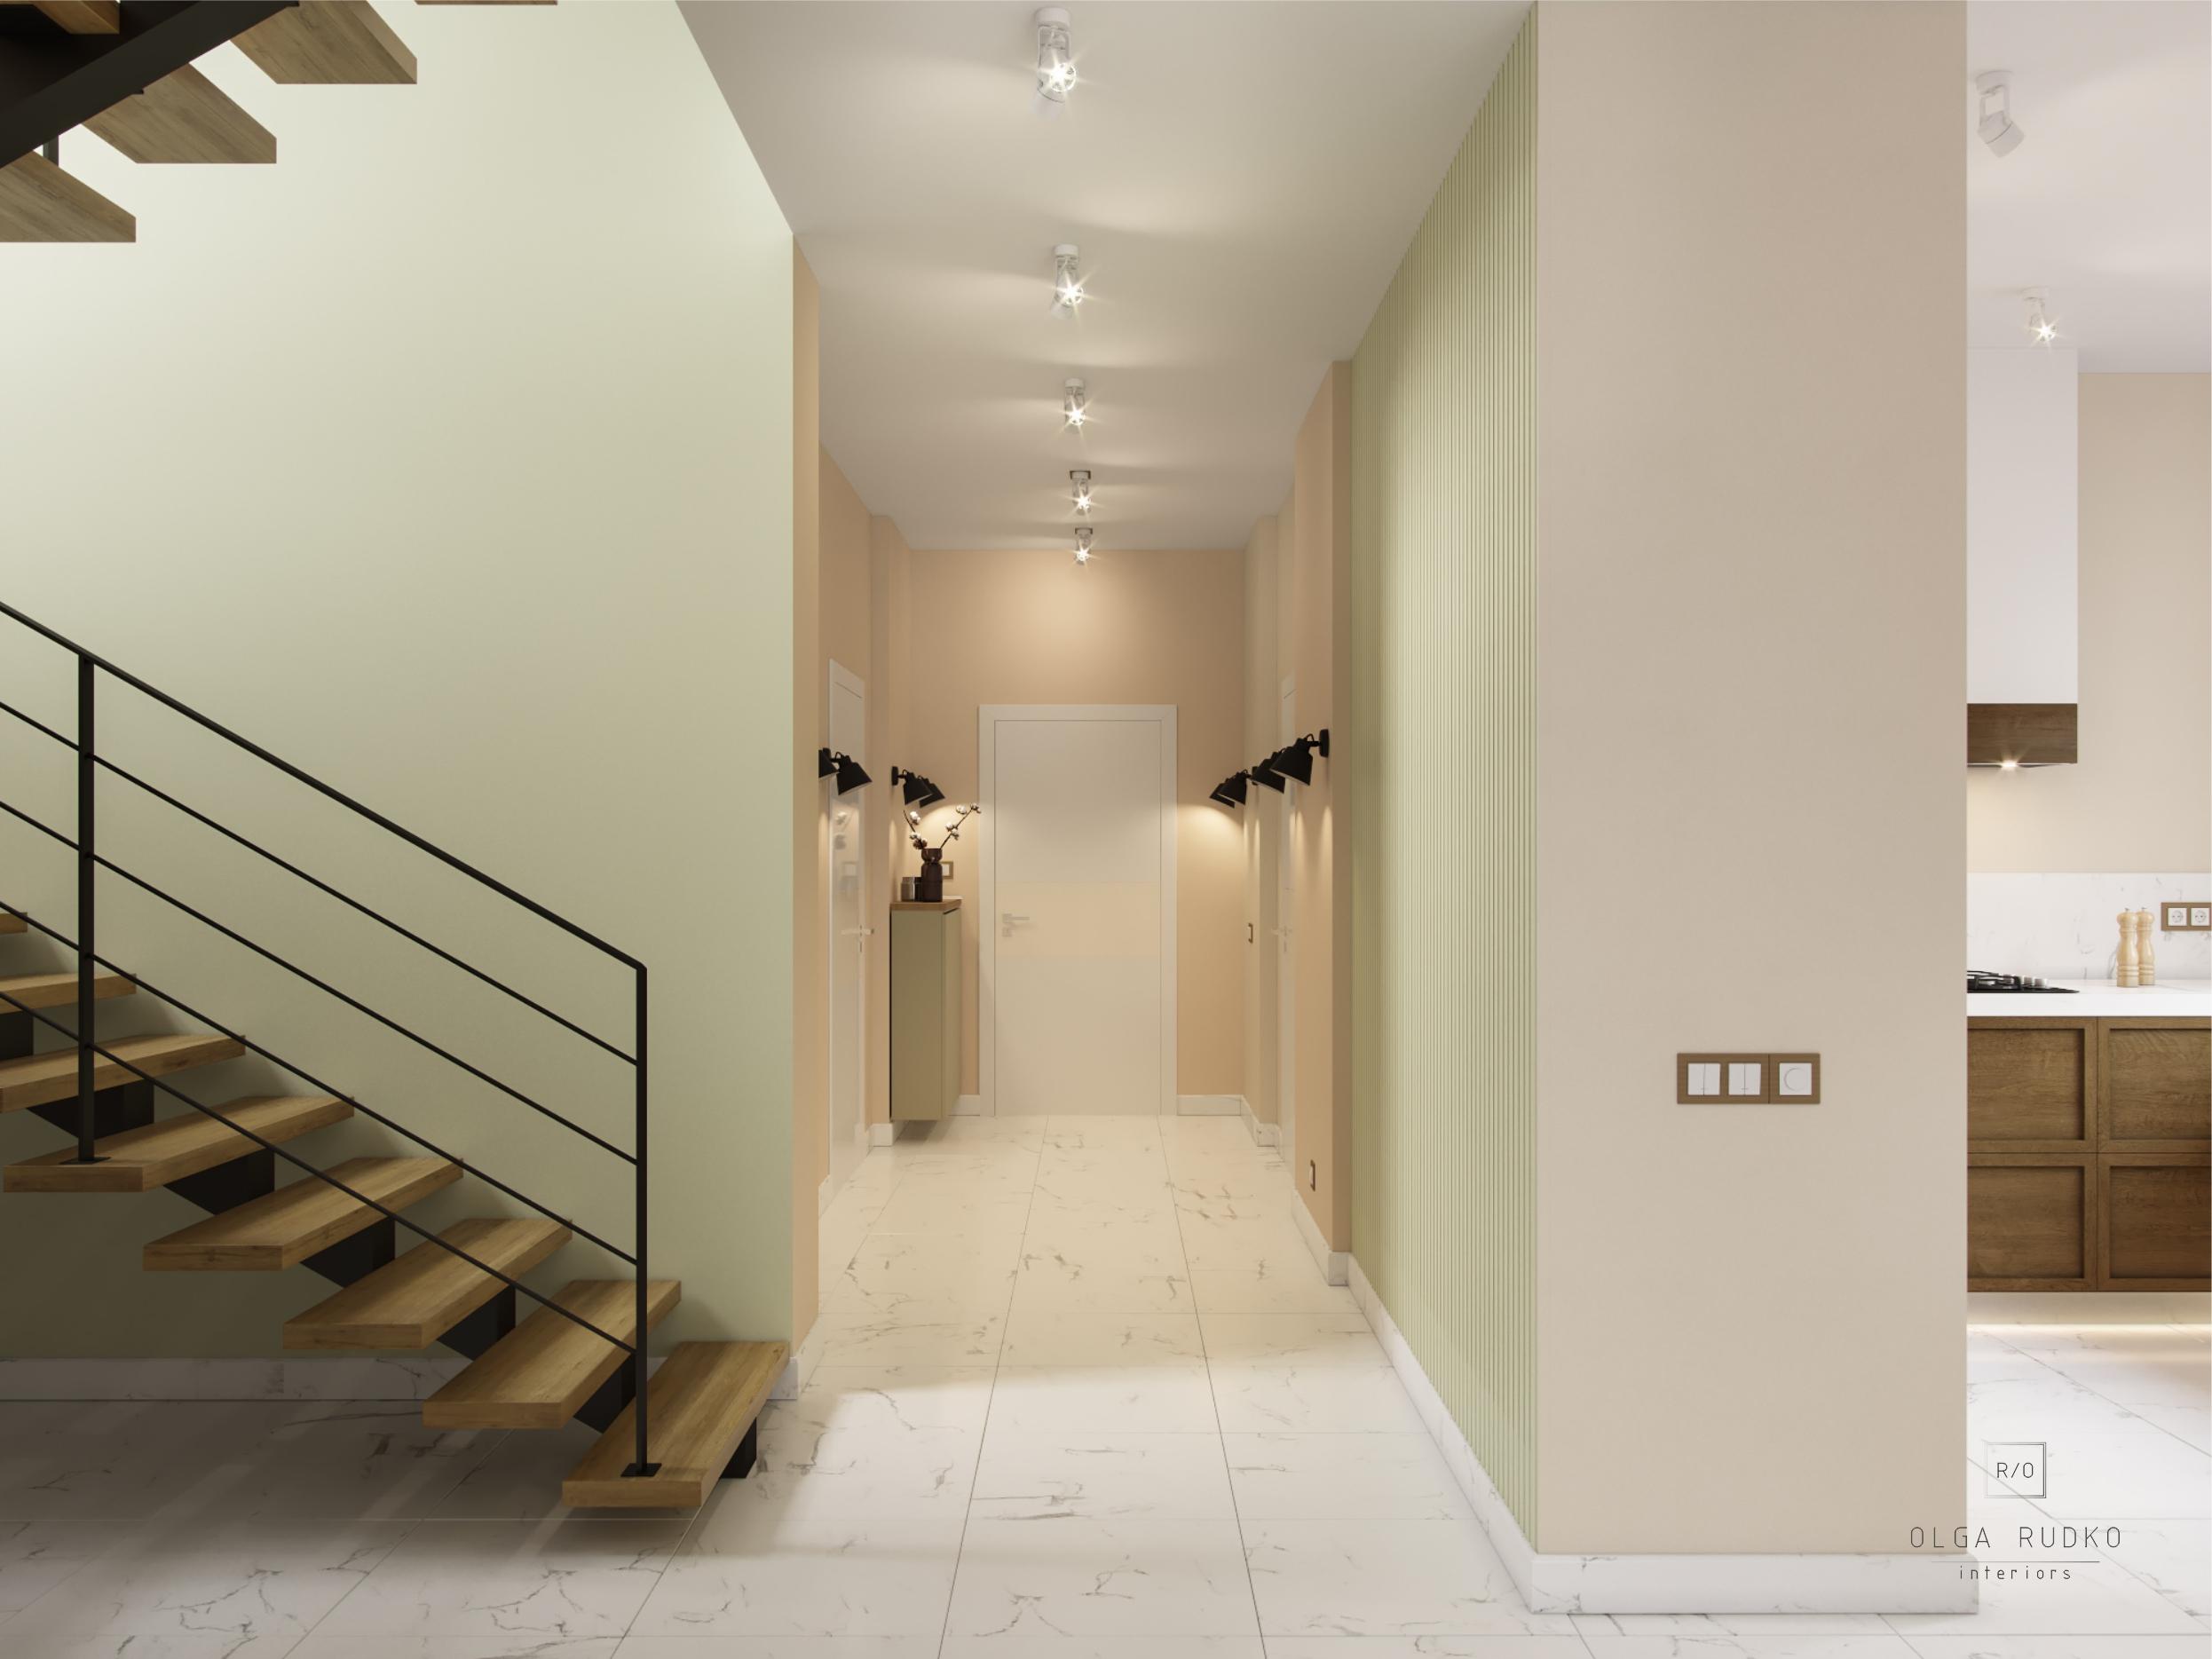 Интерьер коридора cветовыми линиями, подсветкой настенной и подсветкой светодиодной